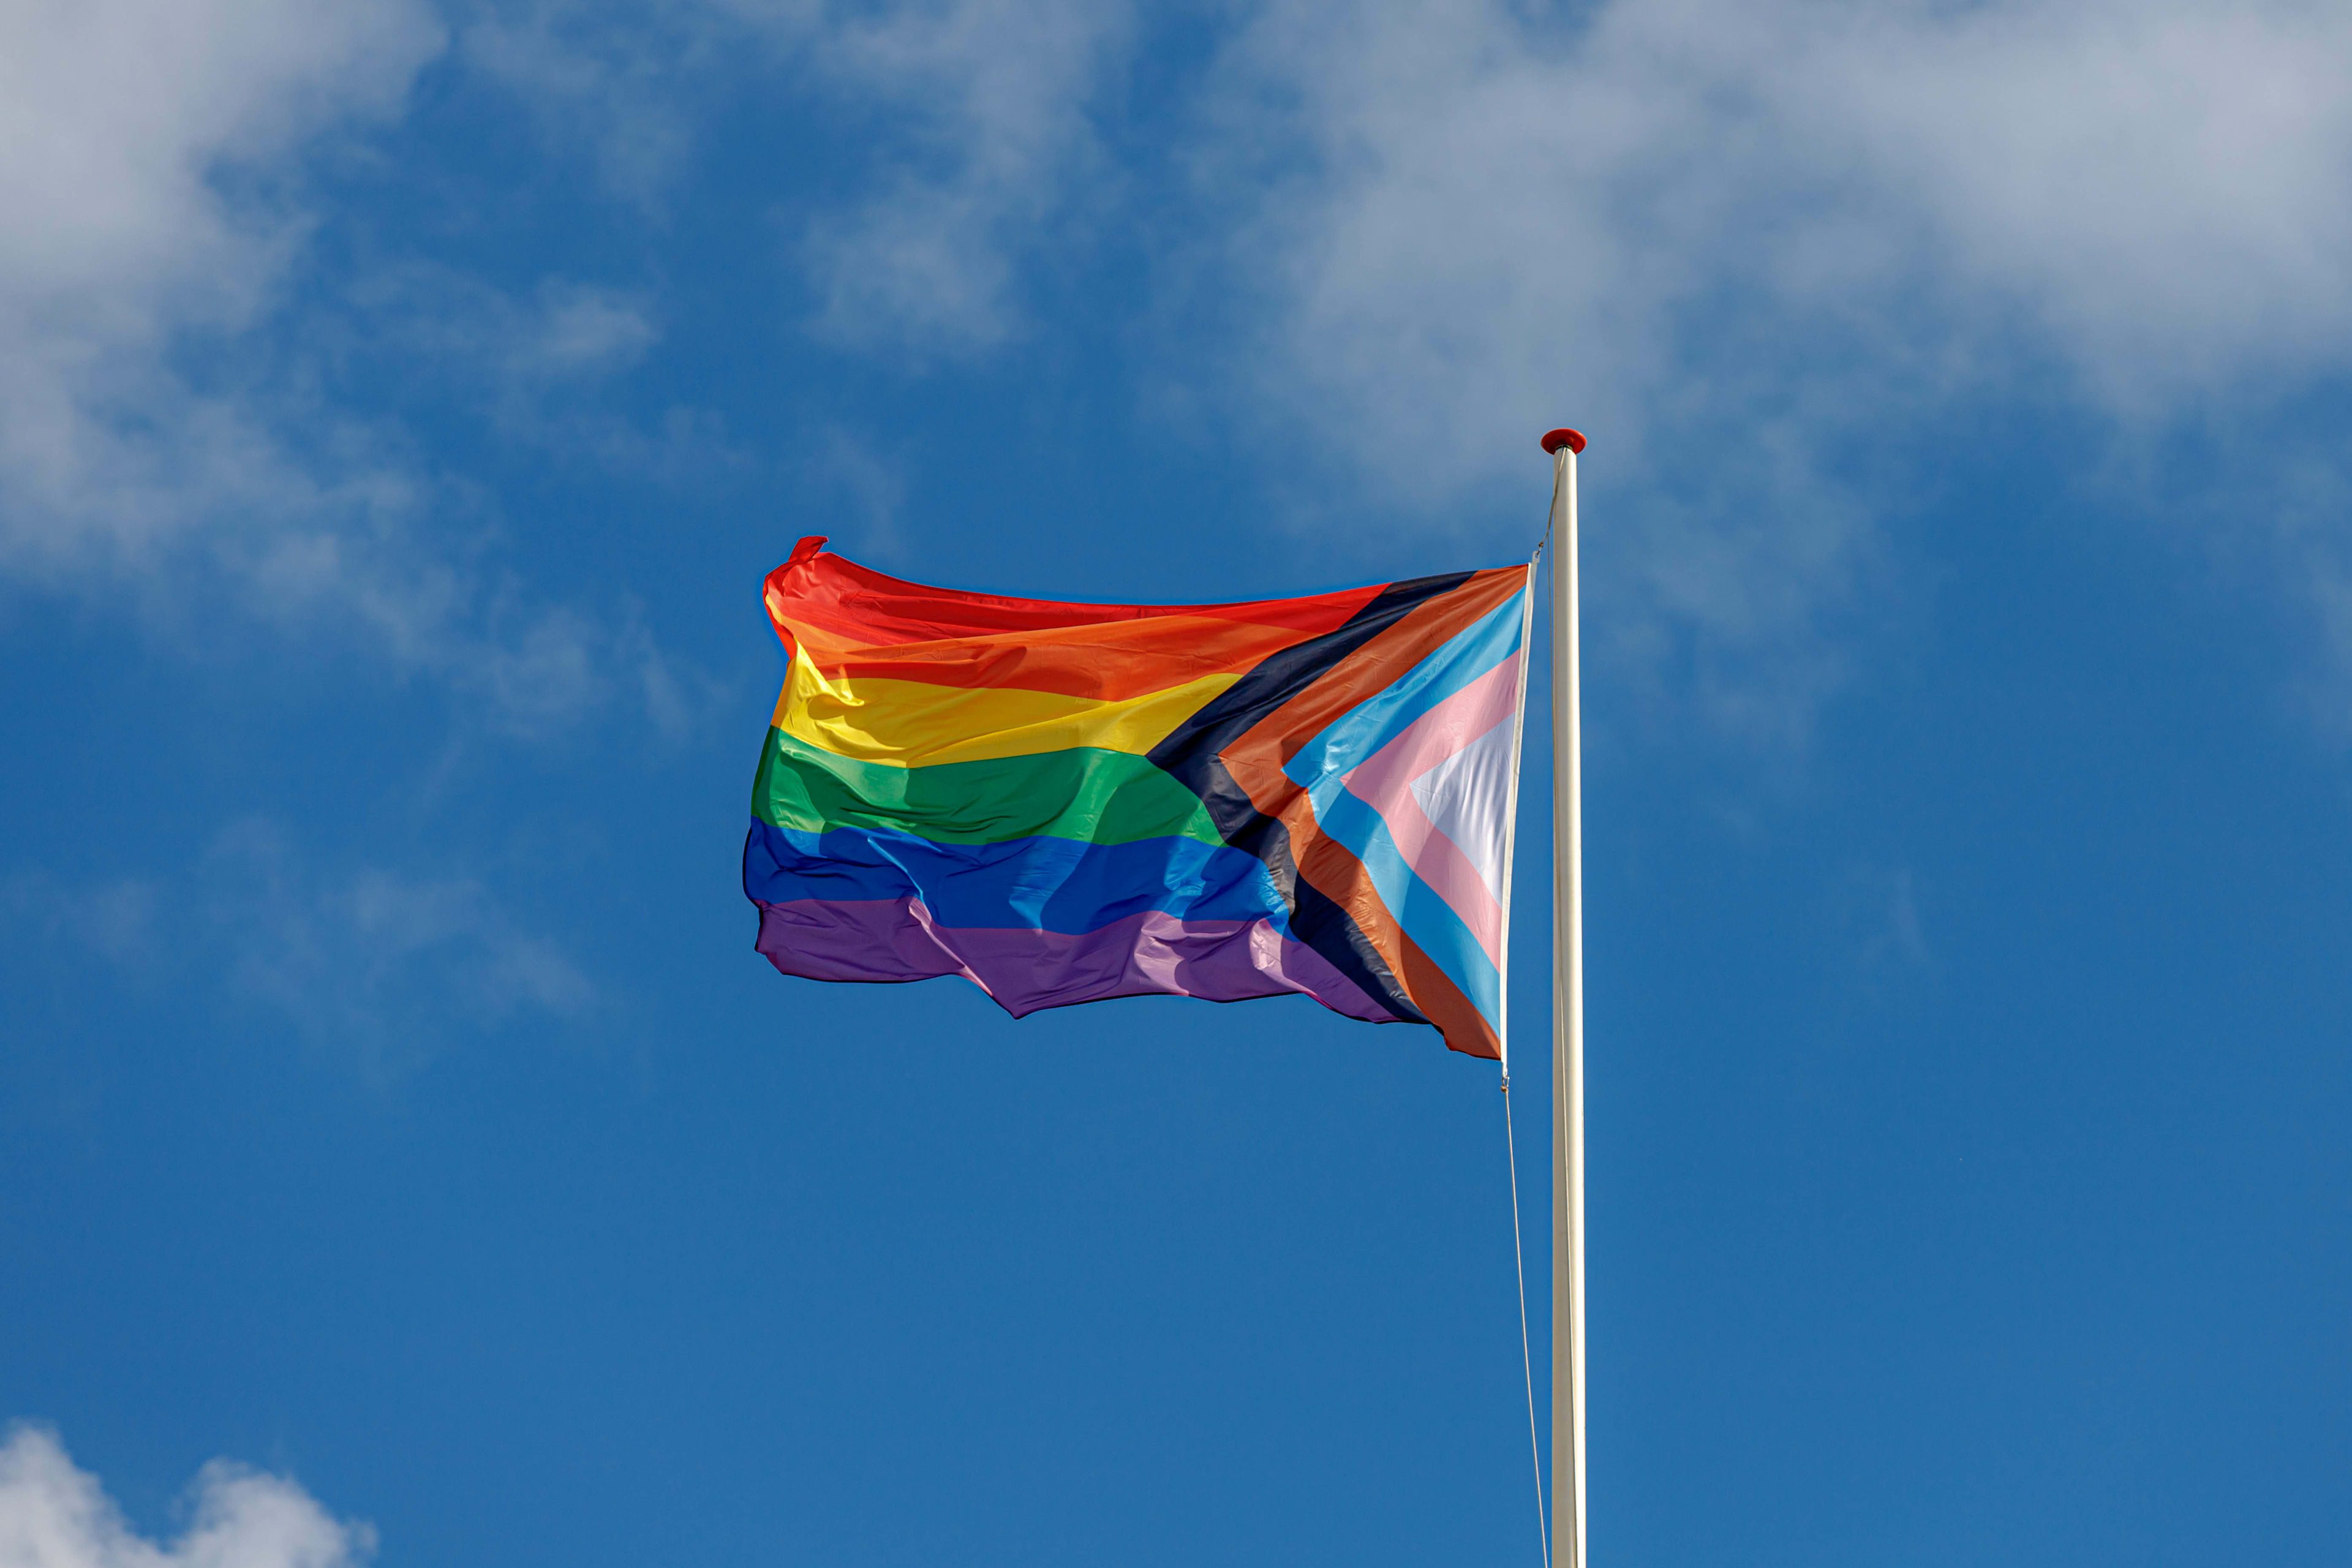 Progress Pride flag waving in the sky